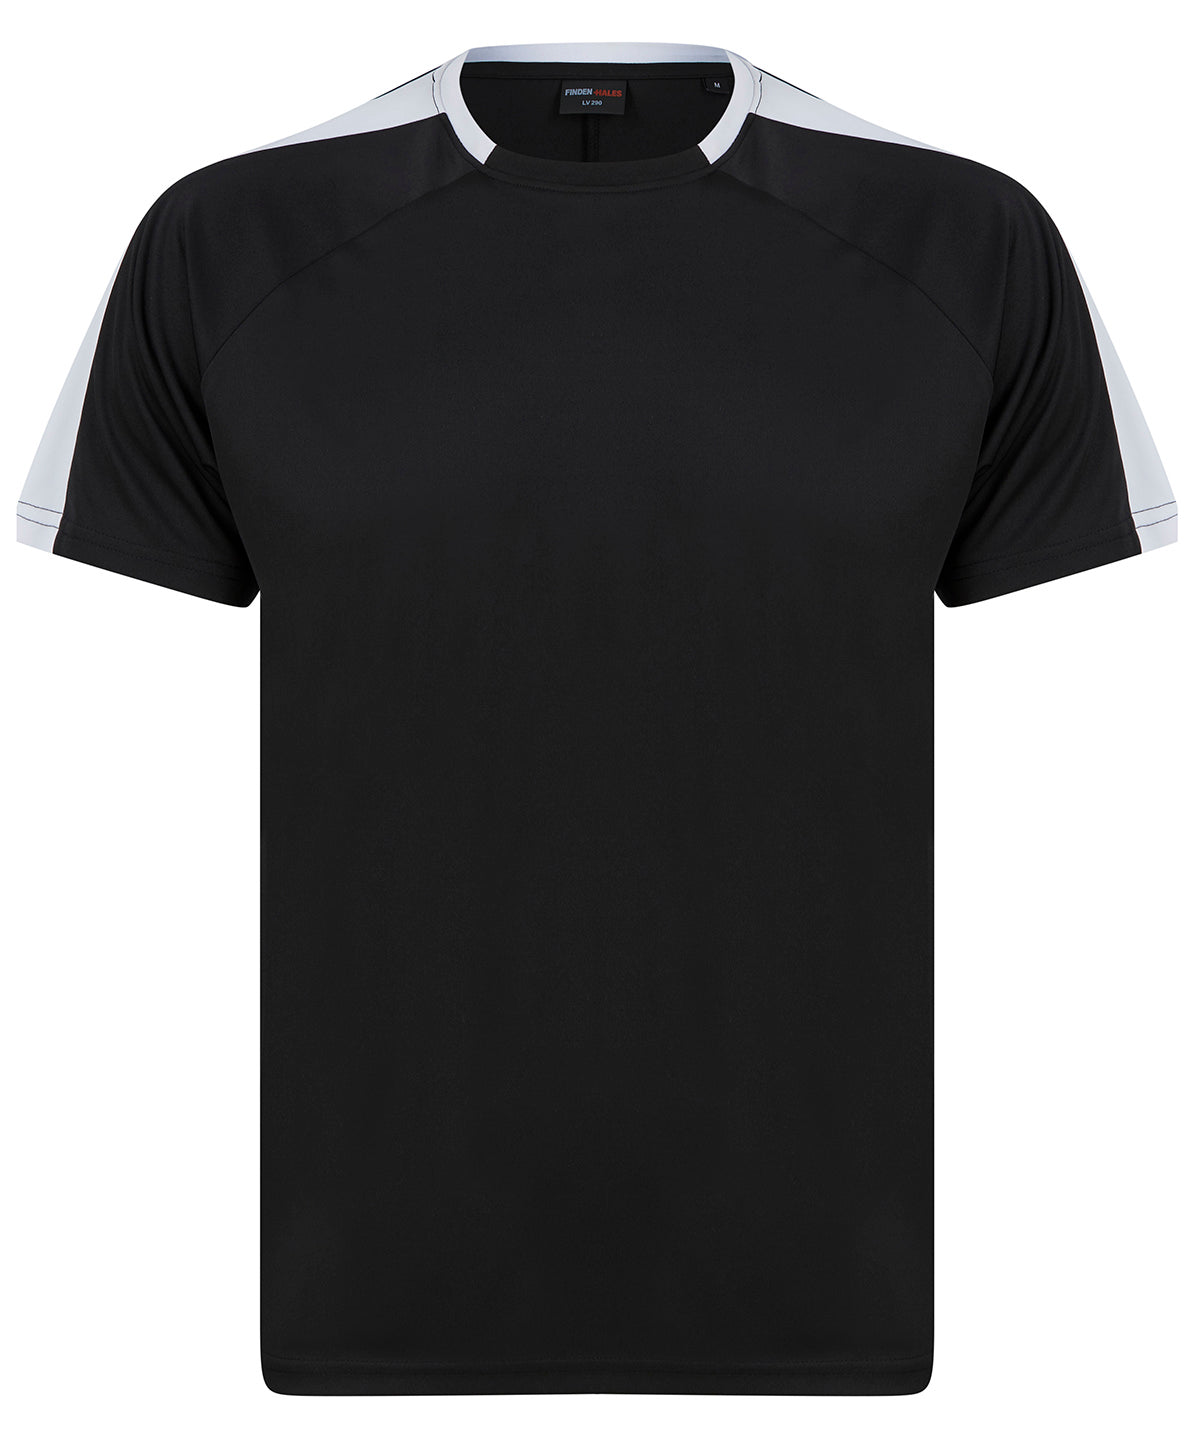 Unisex team t-shirt | Black/White